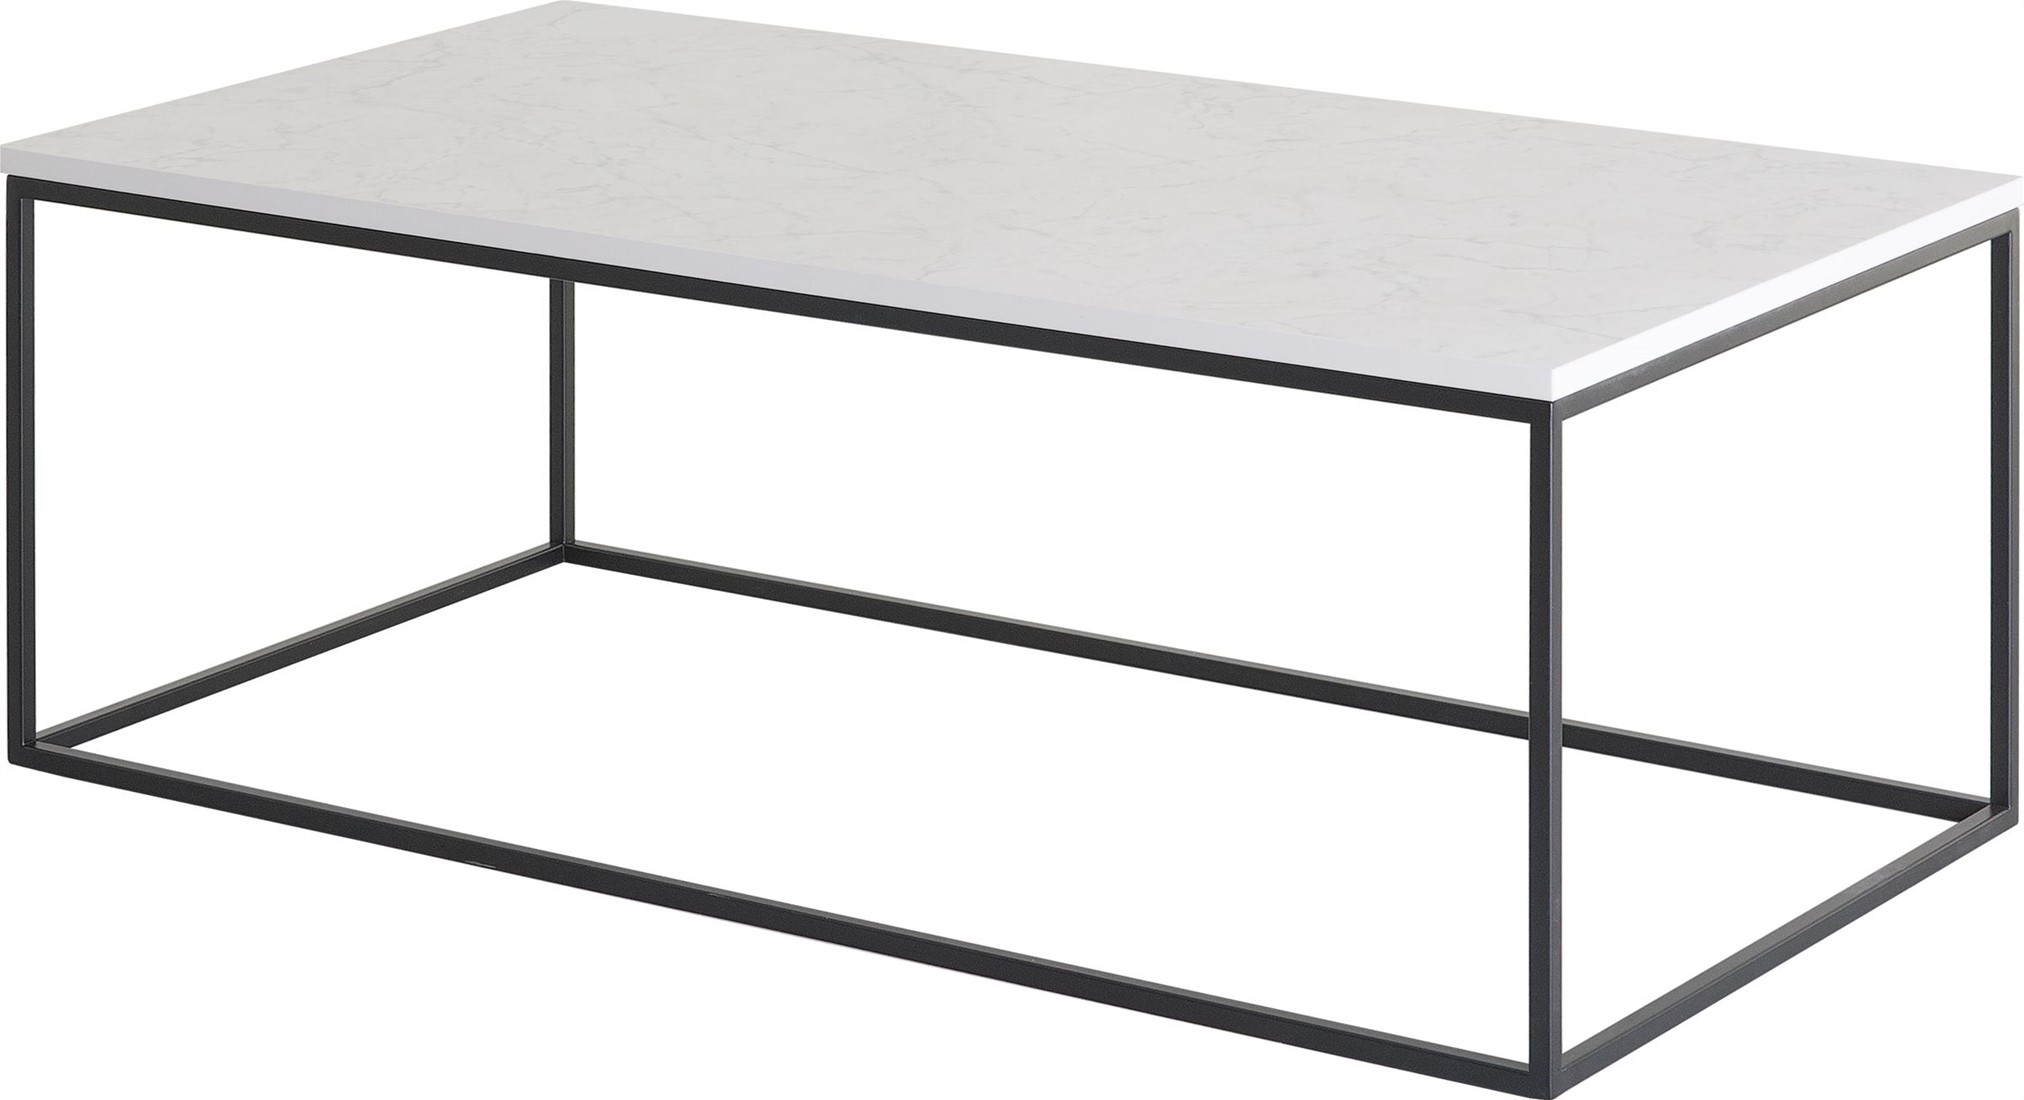 Bevestigen aan Een centrale tool die een belangrijke rol speelt Nadruk Langwerpige salontafel met minimalistisch frame